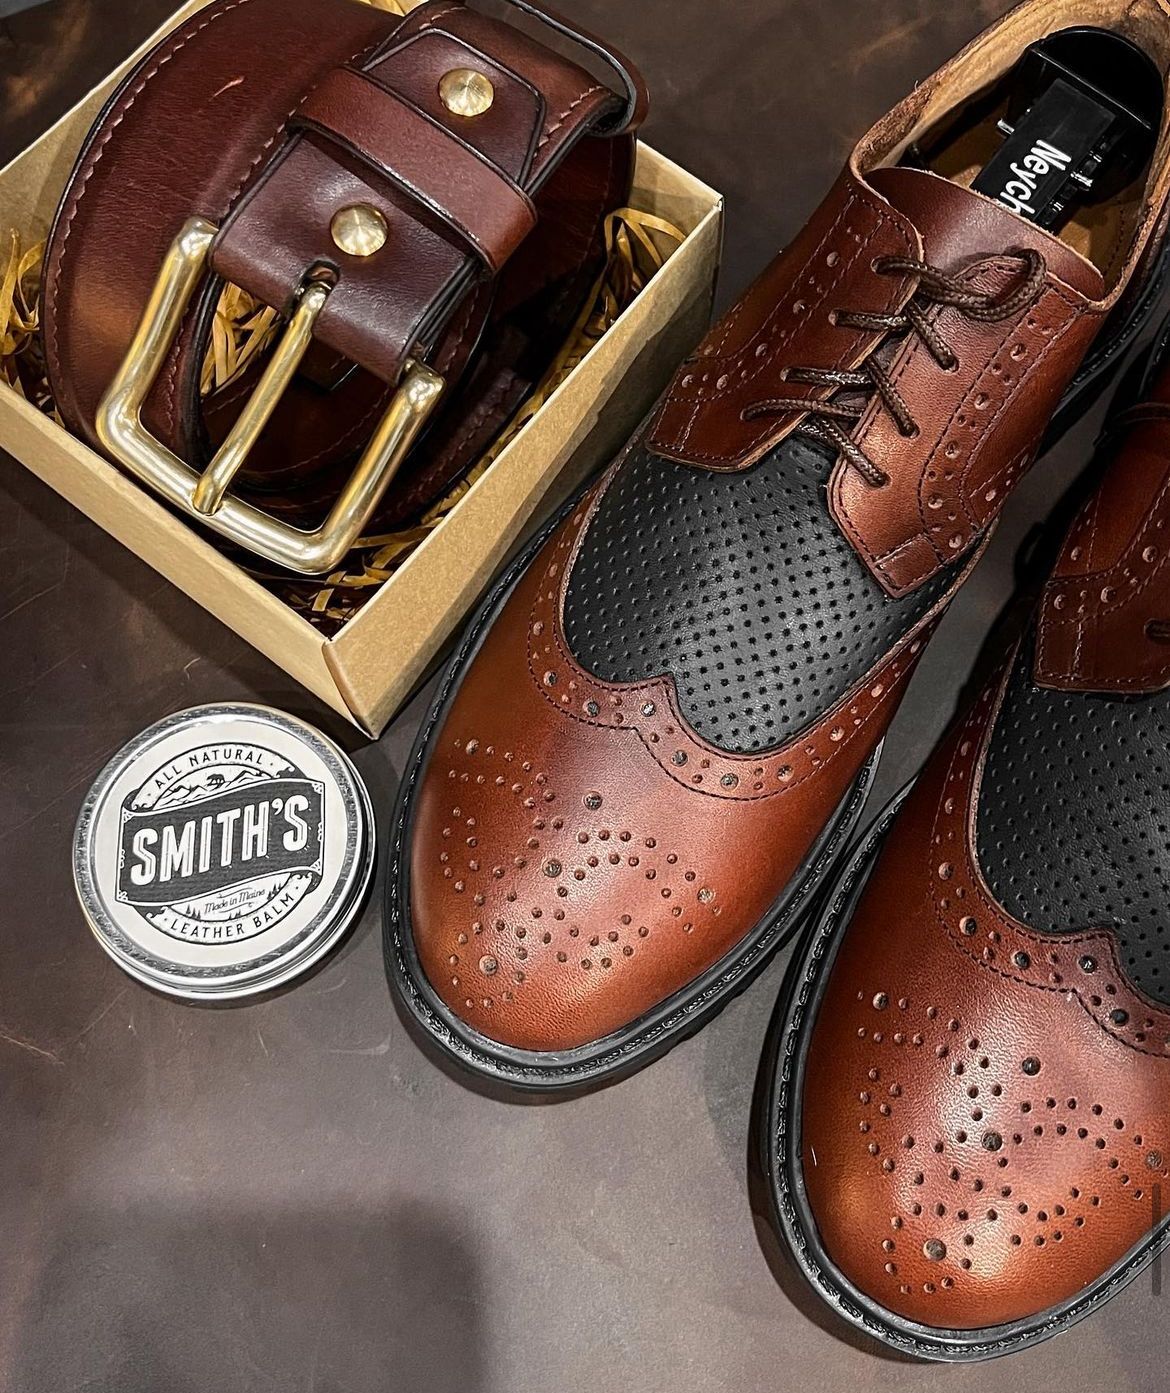 ИП «Dorosh» под брендом «Neyshes Boots»: производство обуви, сочетающей качество и стиль